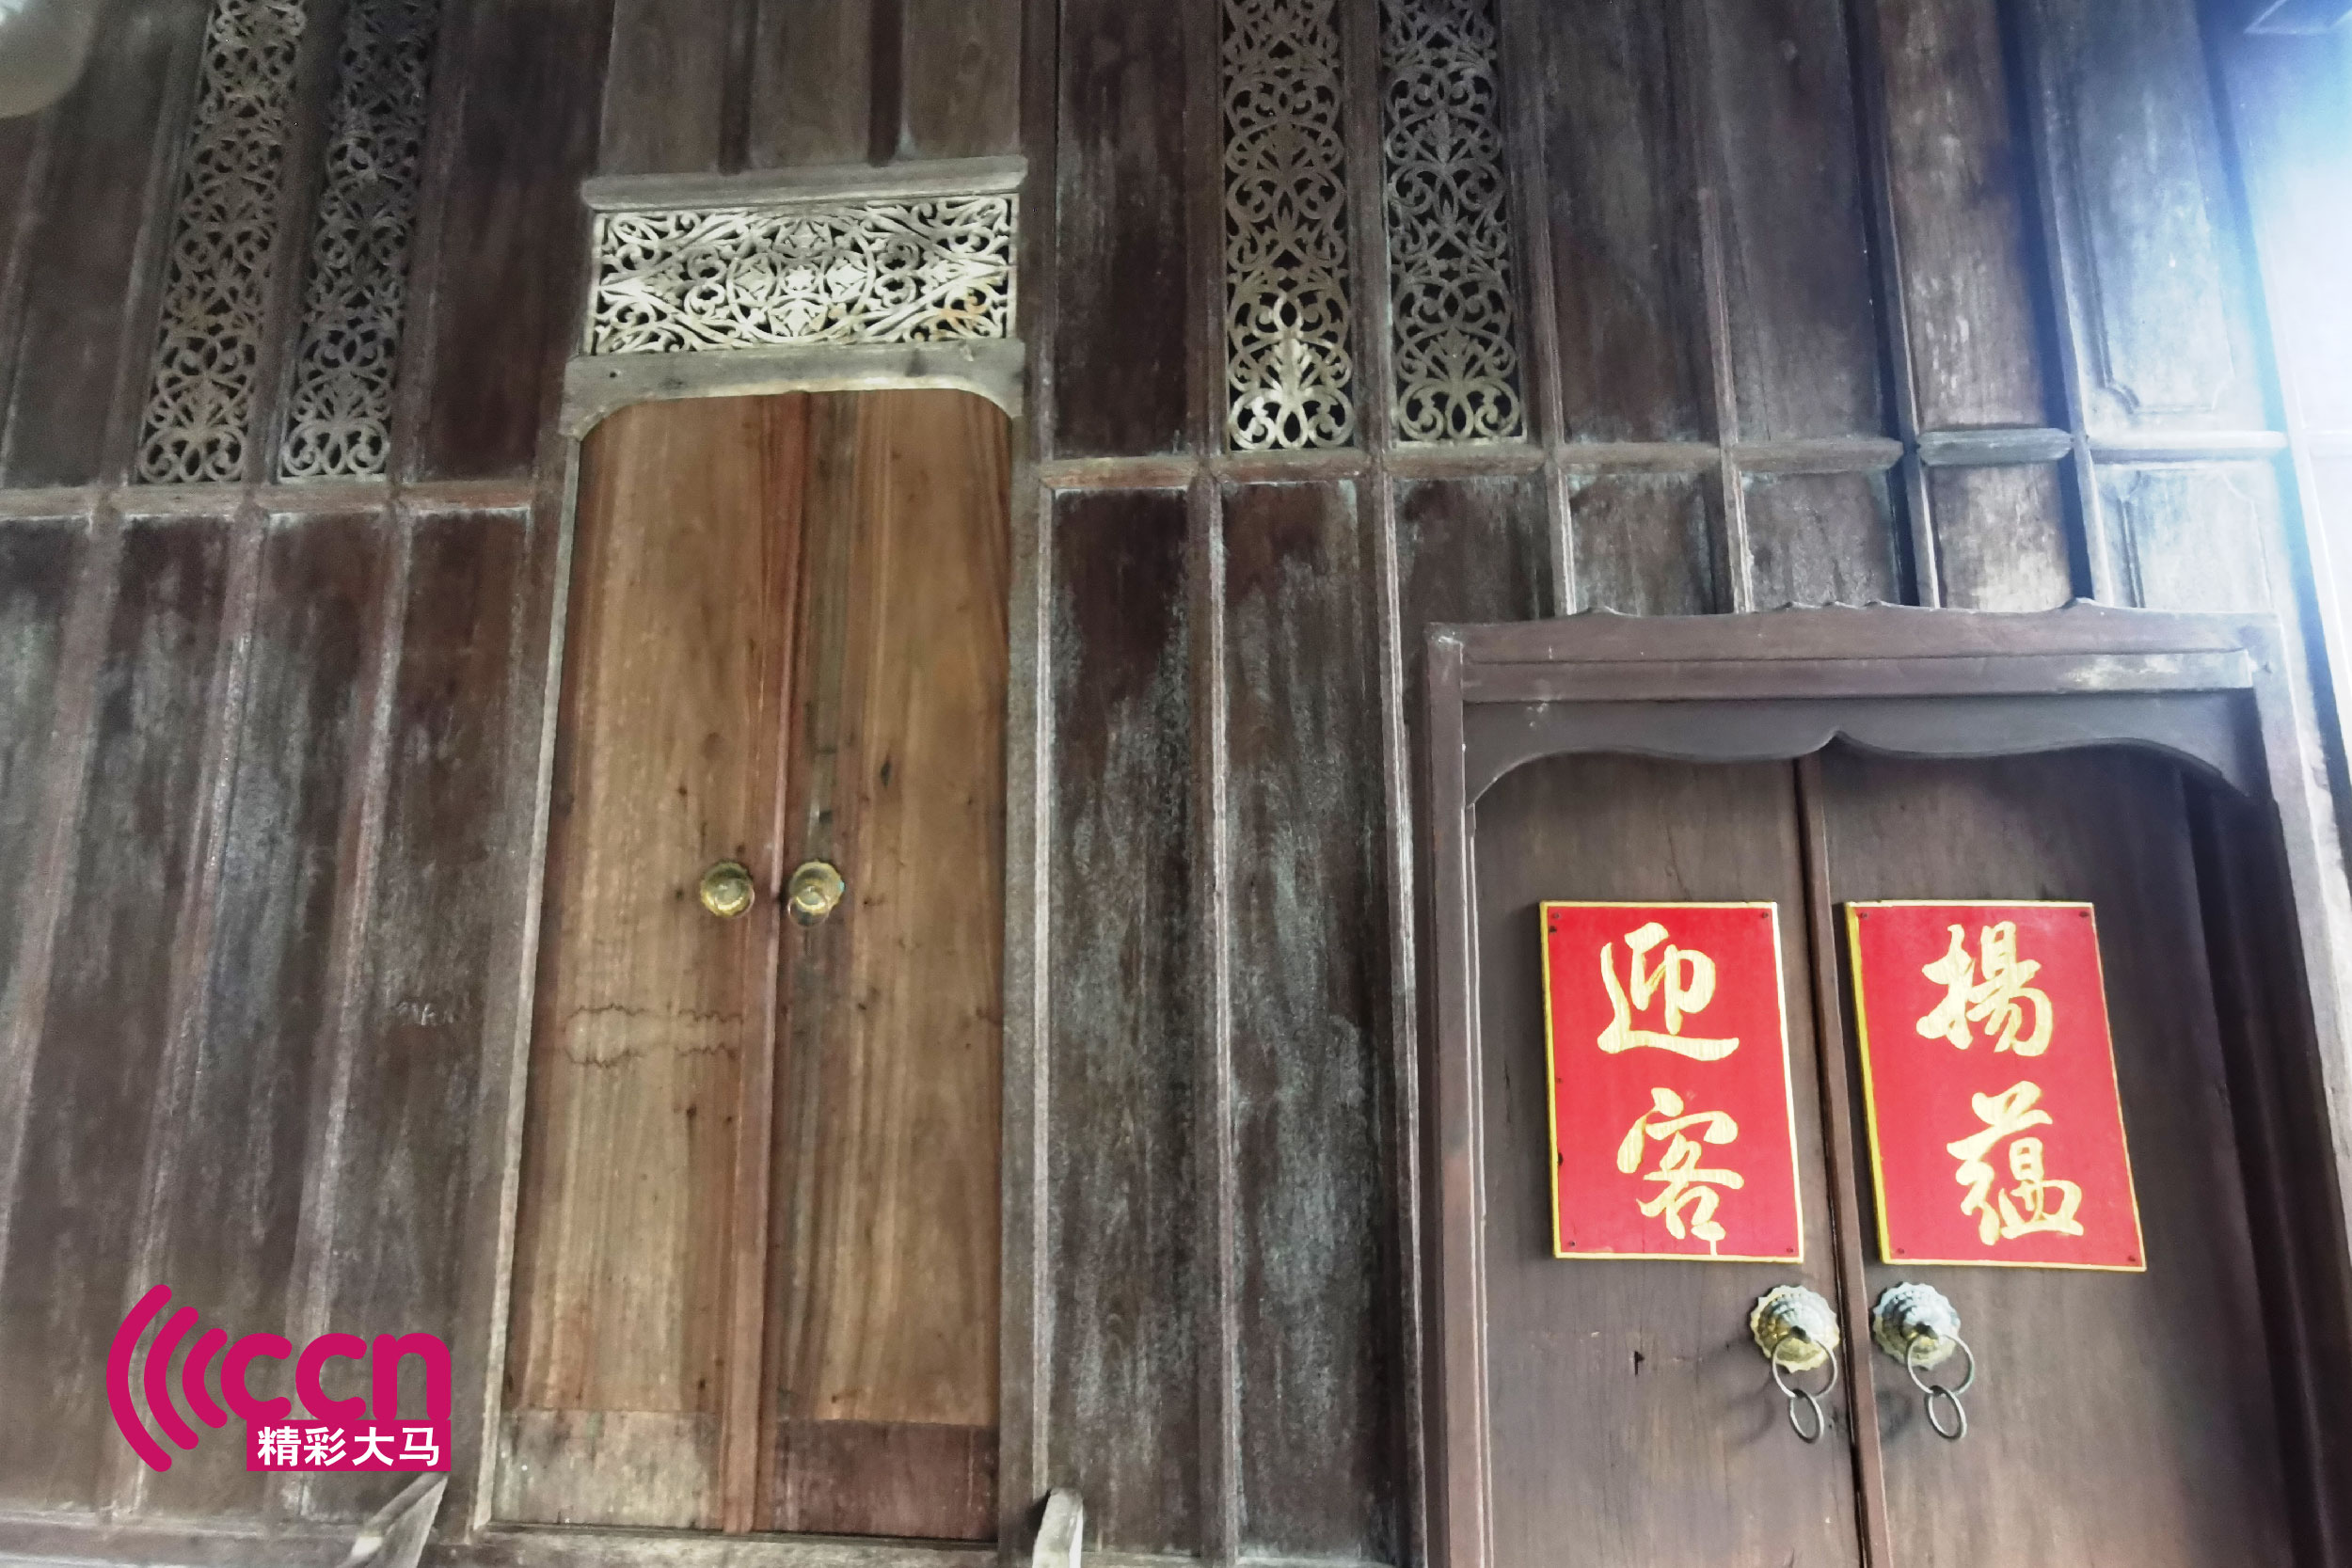 在登嘉楼古建筑门口若看见中文字的门联，屋主就是土生土长的华裔了。-杨琇媖摄于Terrapuri Heritage Village-